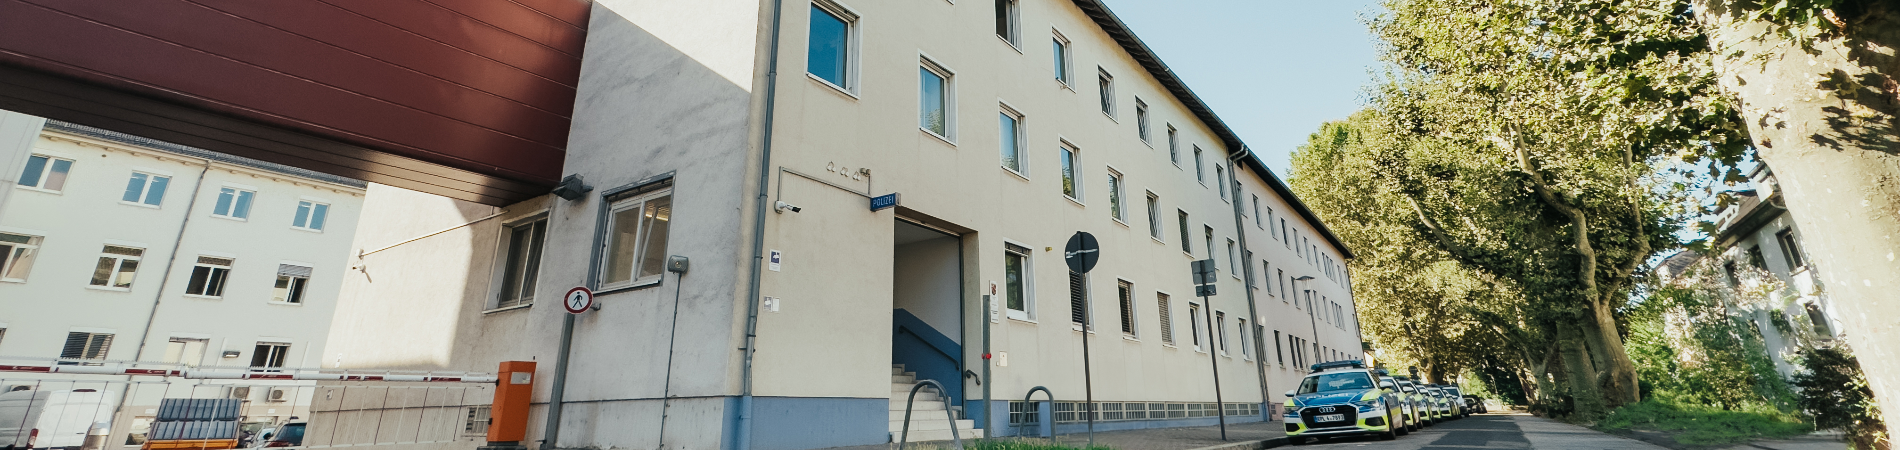 Dienstgebäude der Polizeiinspektion Ludwigshafen 1